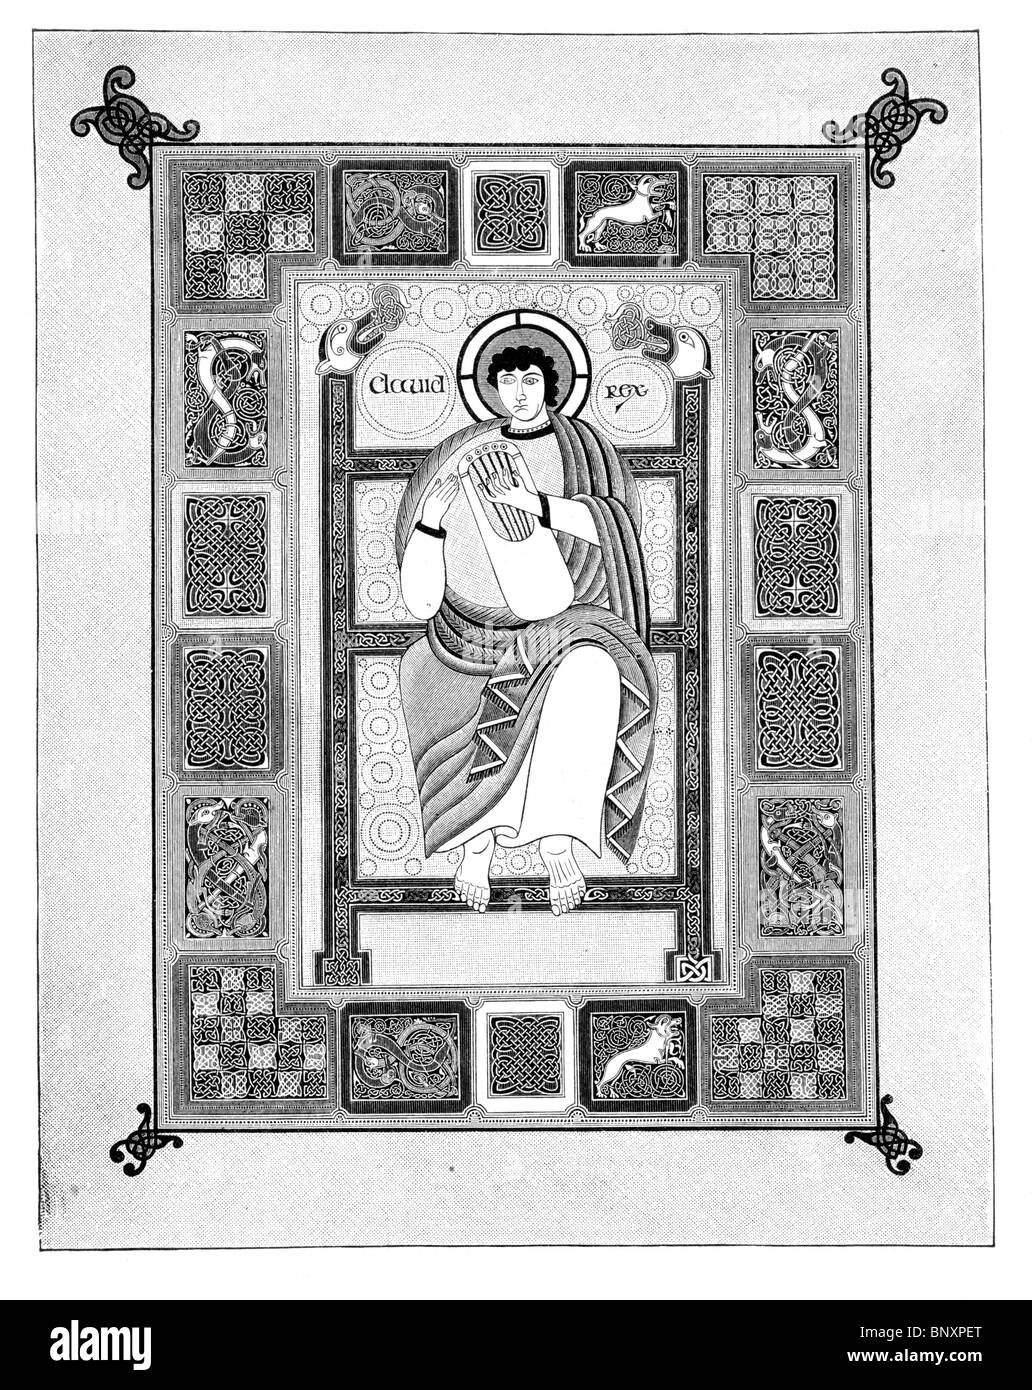 Bianco e Nero illustrazione di un manoscritto illuminato ascritto a Baeda raffigurante il re Davide come salmista Foto Stock